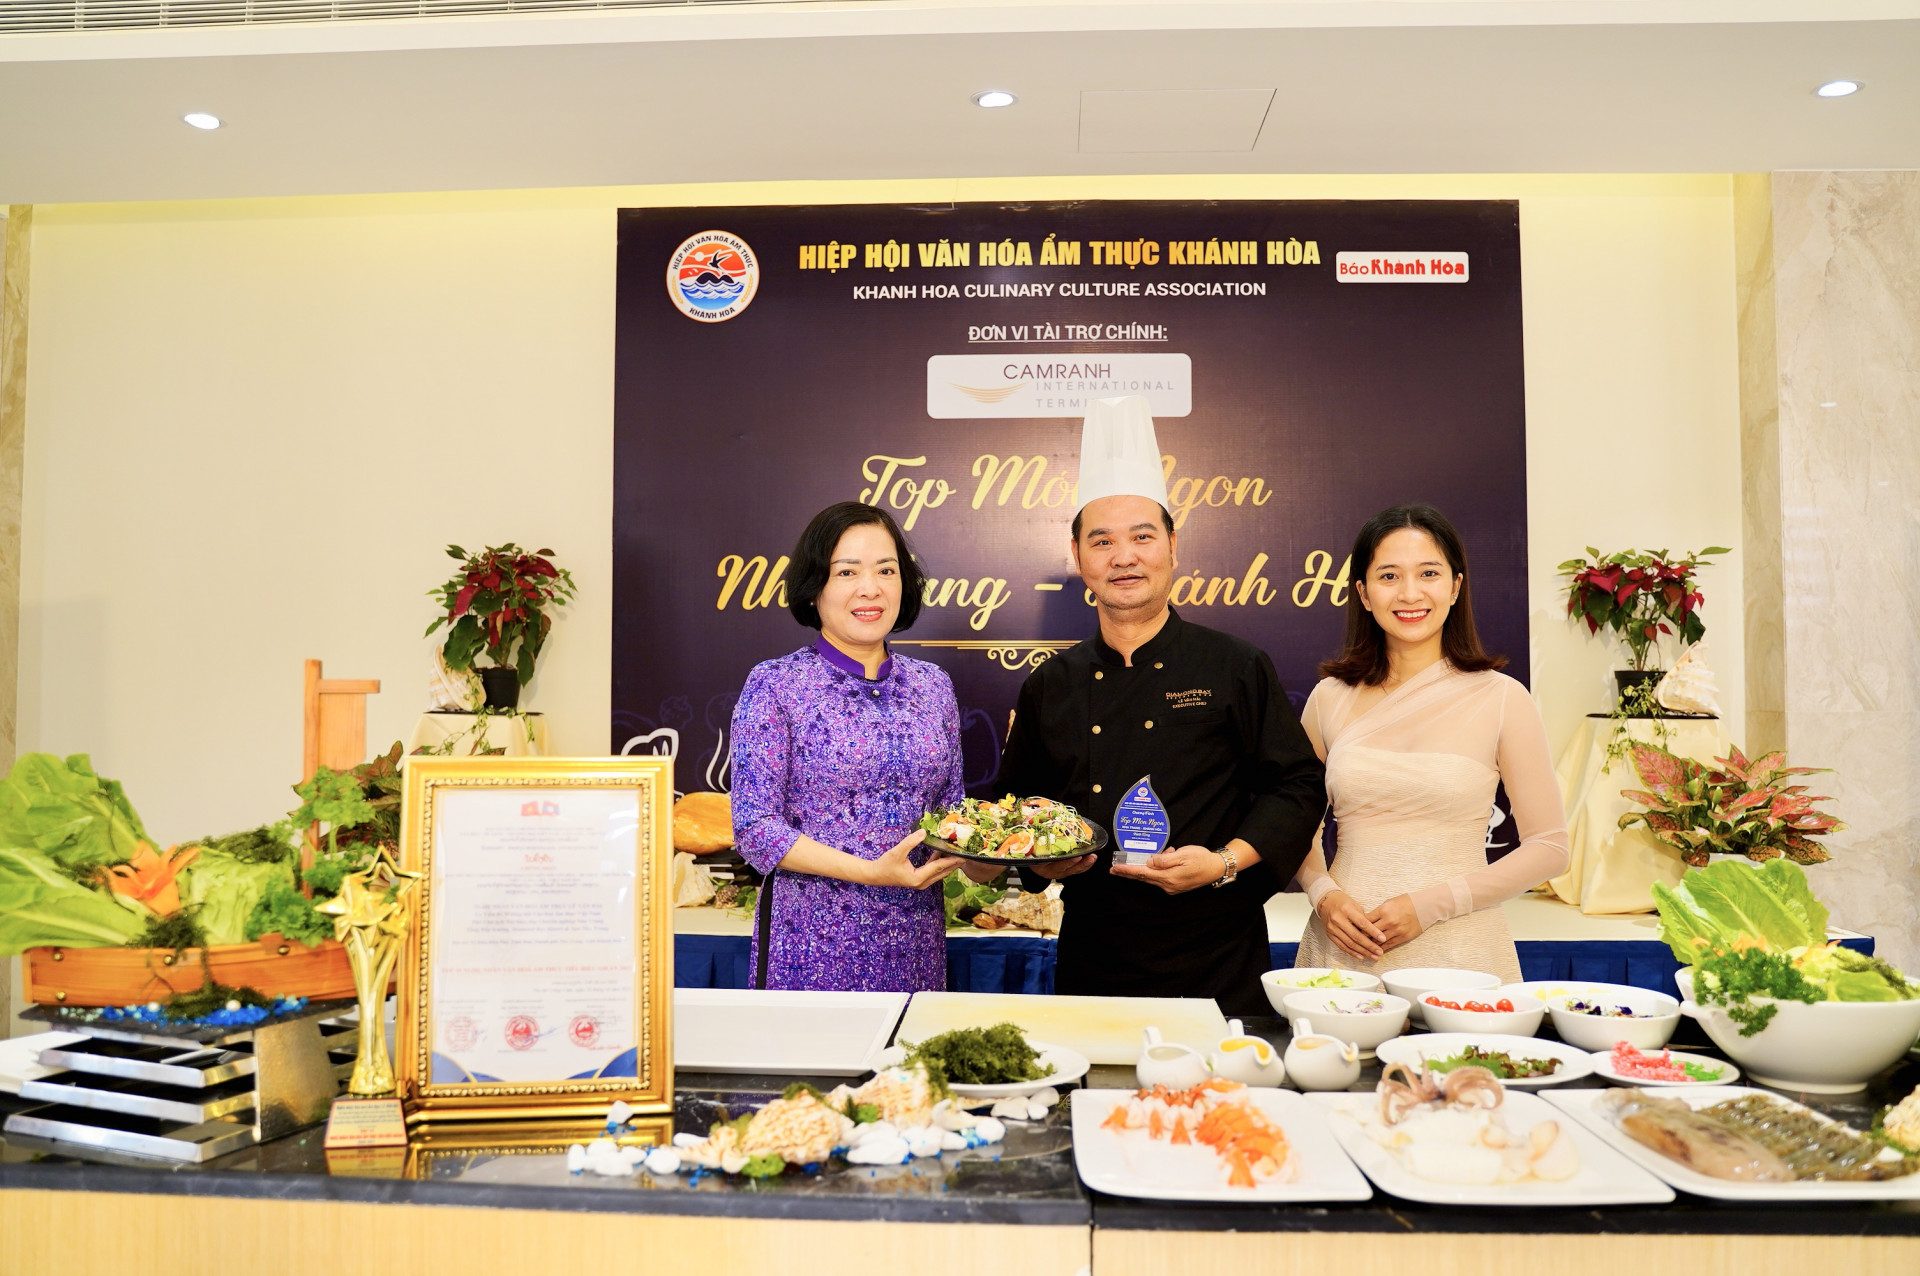 Bà Lê Thị Hồng Minh - Chủ tịch Hiệp hội Văn hóa ẩm thực Khánh Hòa (bên trái) trao kỷ niệm chương cho nghệ nhân Lê Văn Hải - DT Group & Nhà Hàng Hải Châu